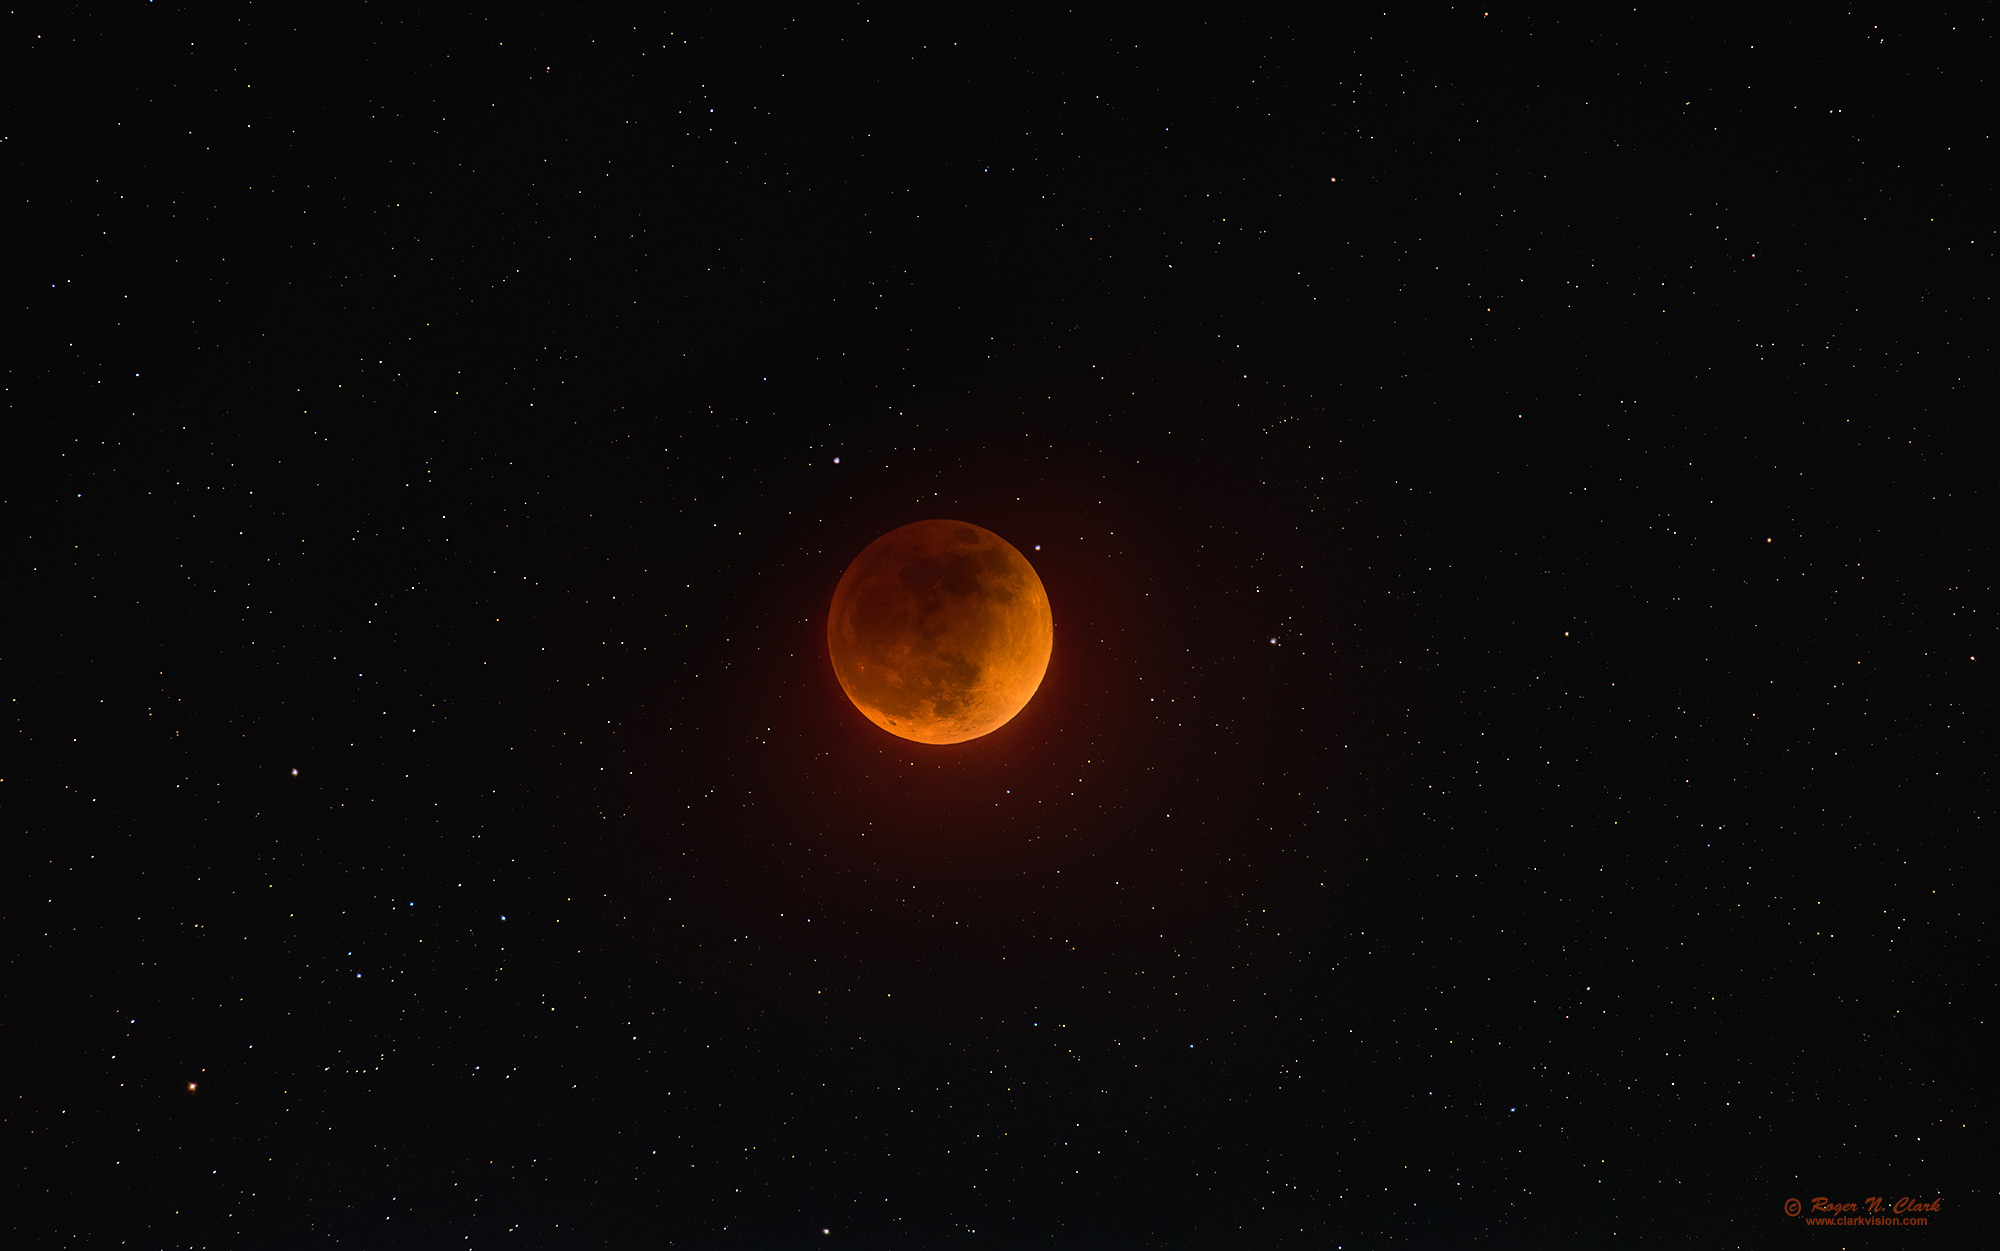 image moon-eclipse-stars-rnclark-c05-15-2022_av93.i-2000s.jpg is Copyrighted by Roger N. Clark, www.clarkvision.com